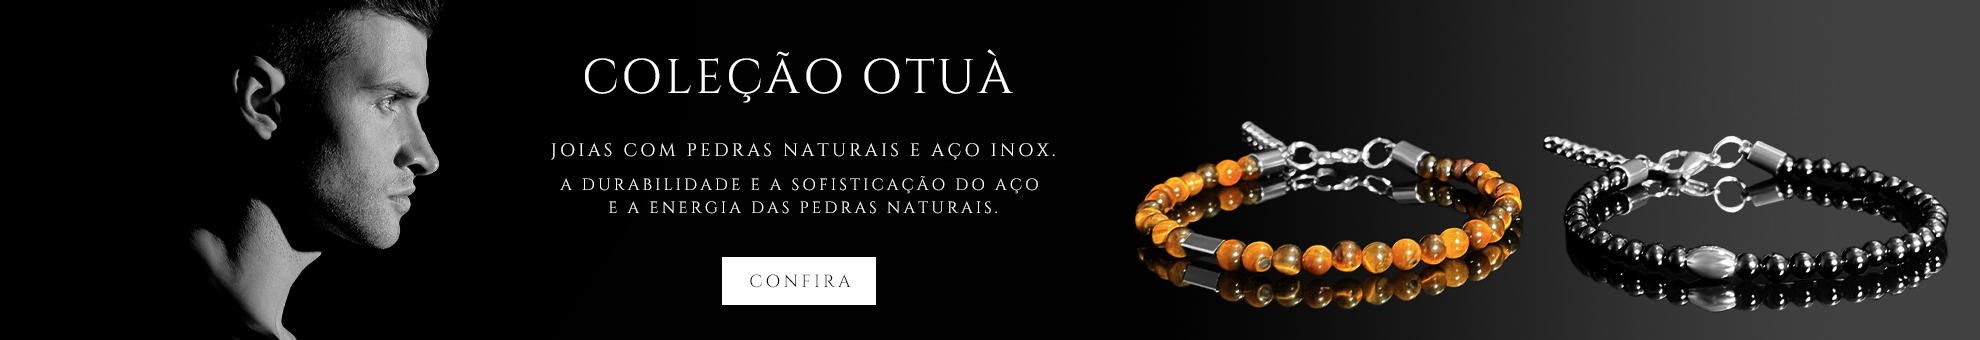 Coleção Otuà - Desktop